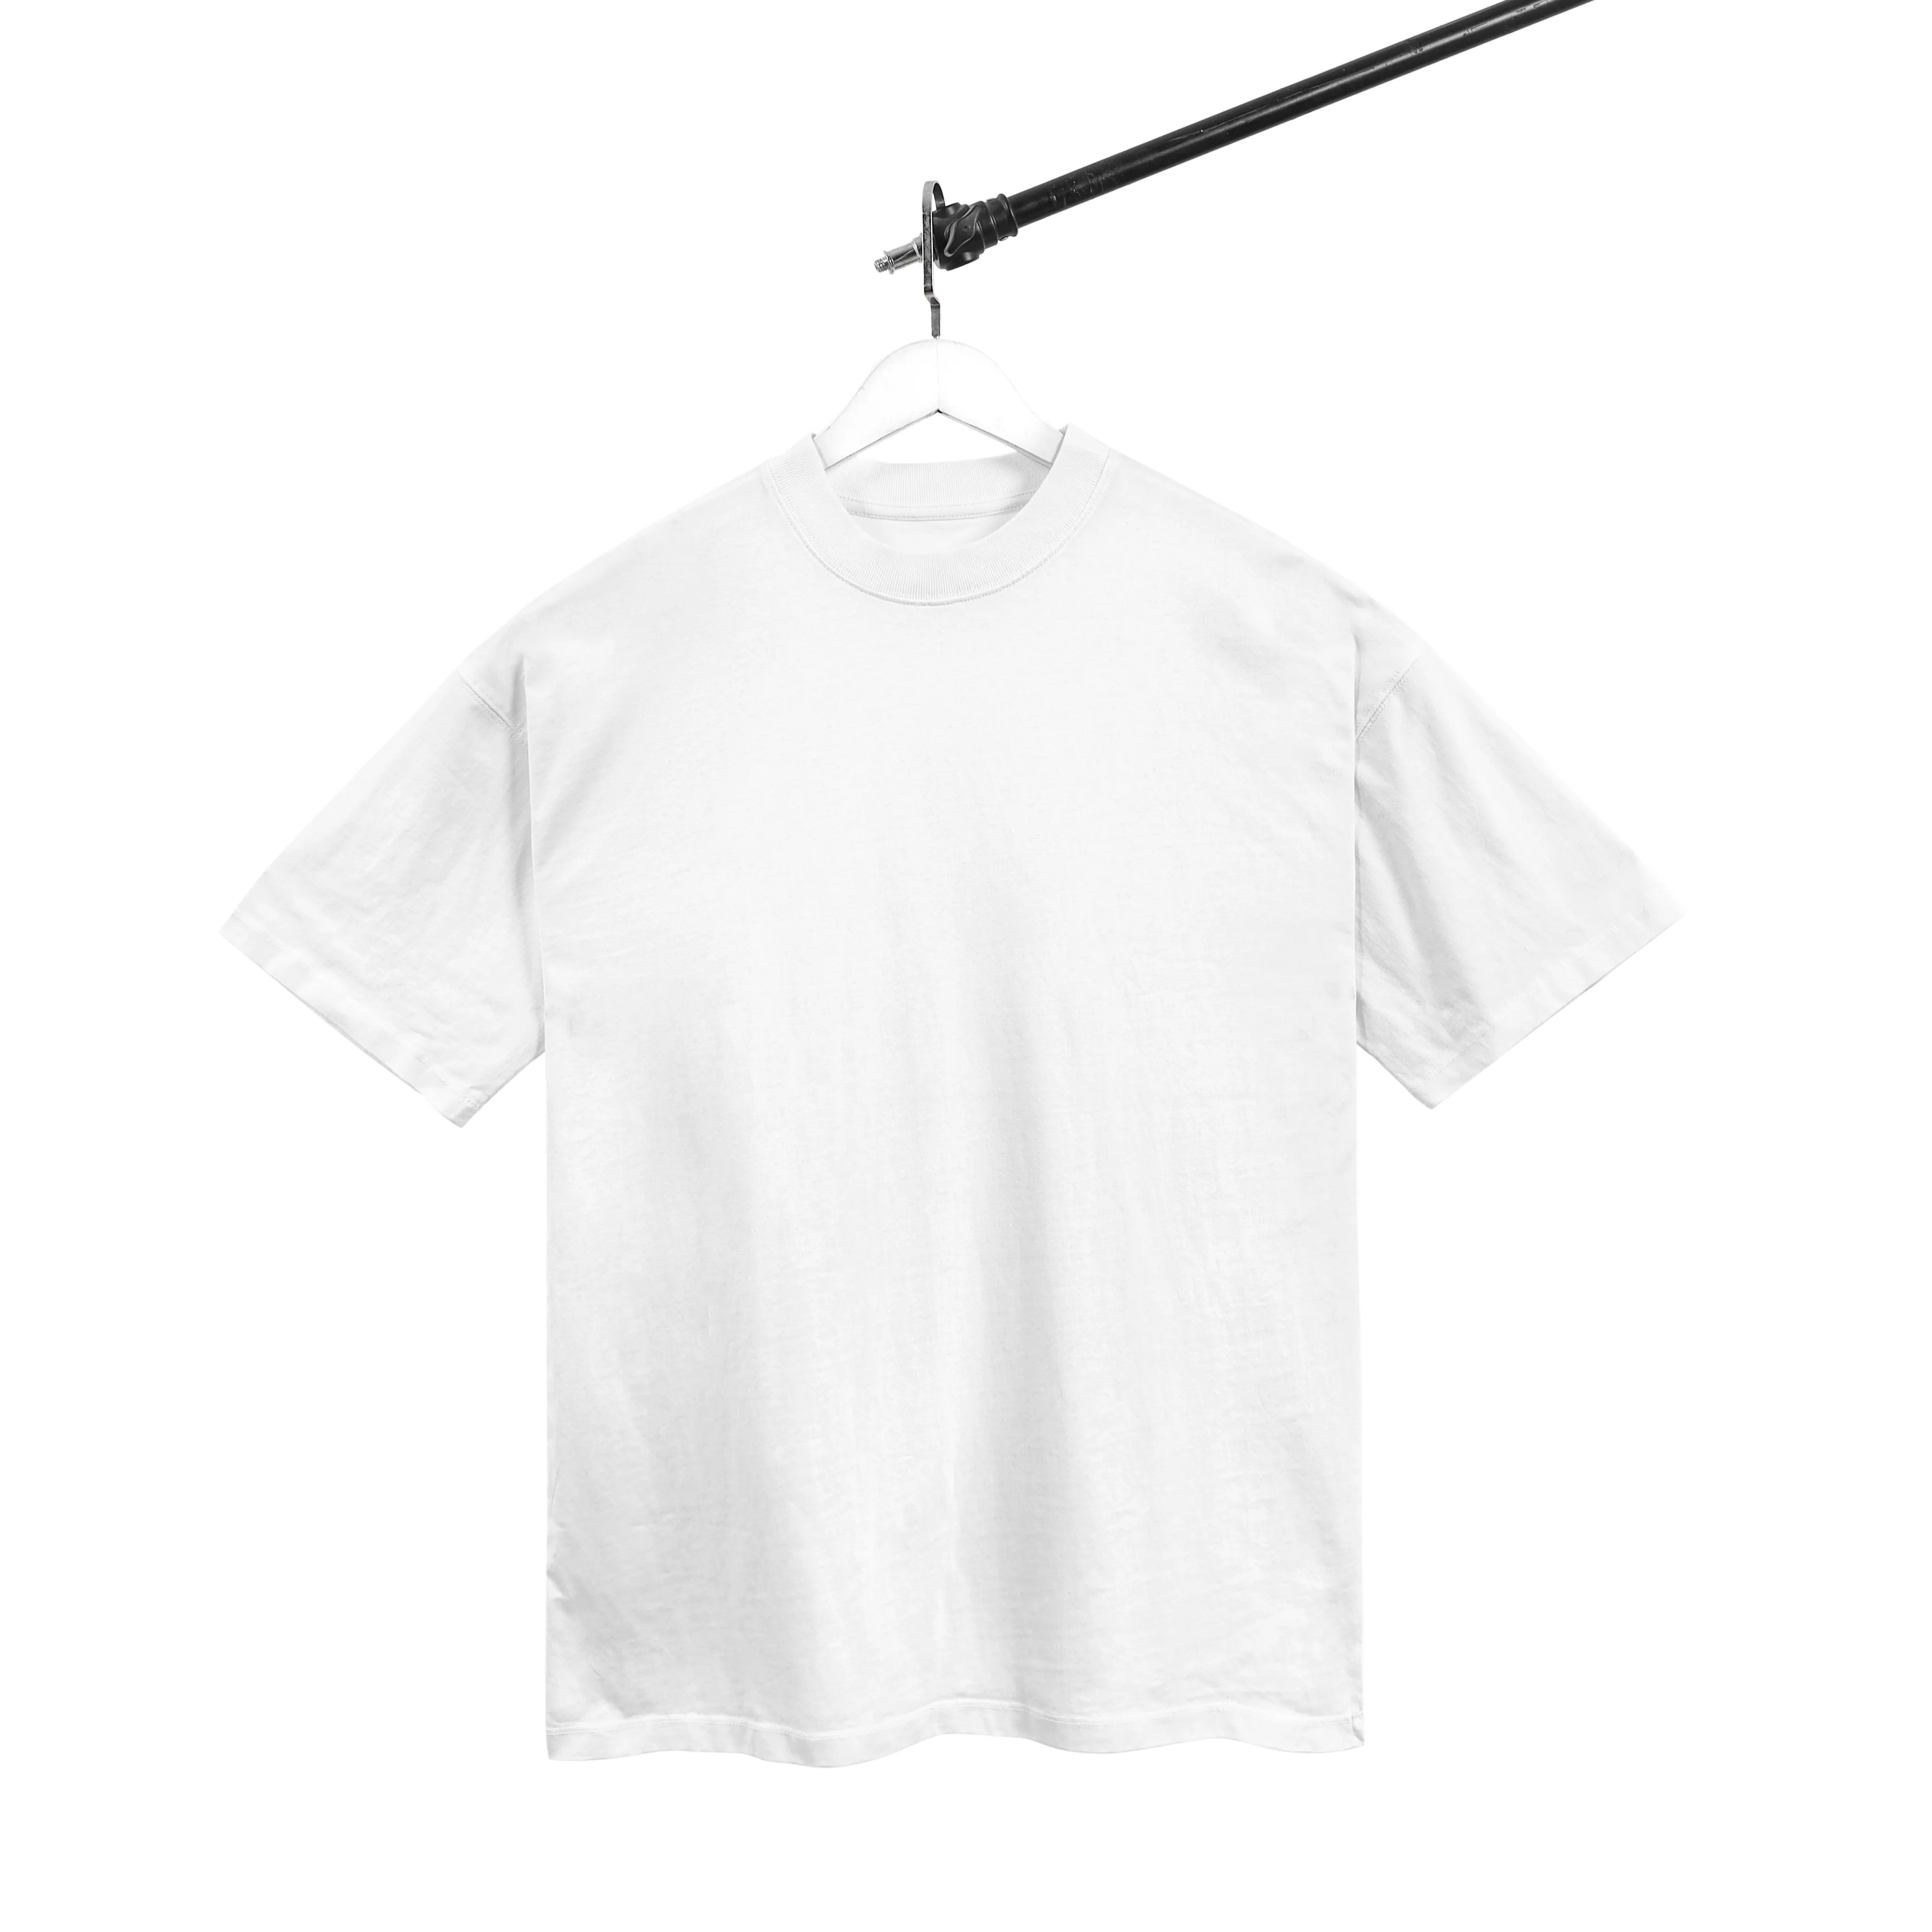 Cheap Price OEM Vietnam Wholesaler 100% Cotton Full Sleeve T shirt for Men Quick Dry O-Neck Collar Material White Men's T-shirt